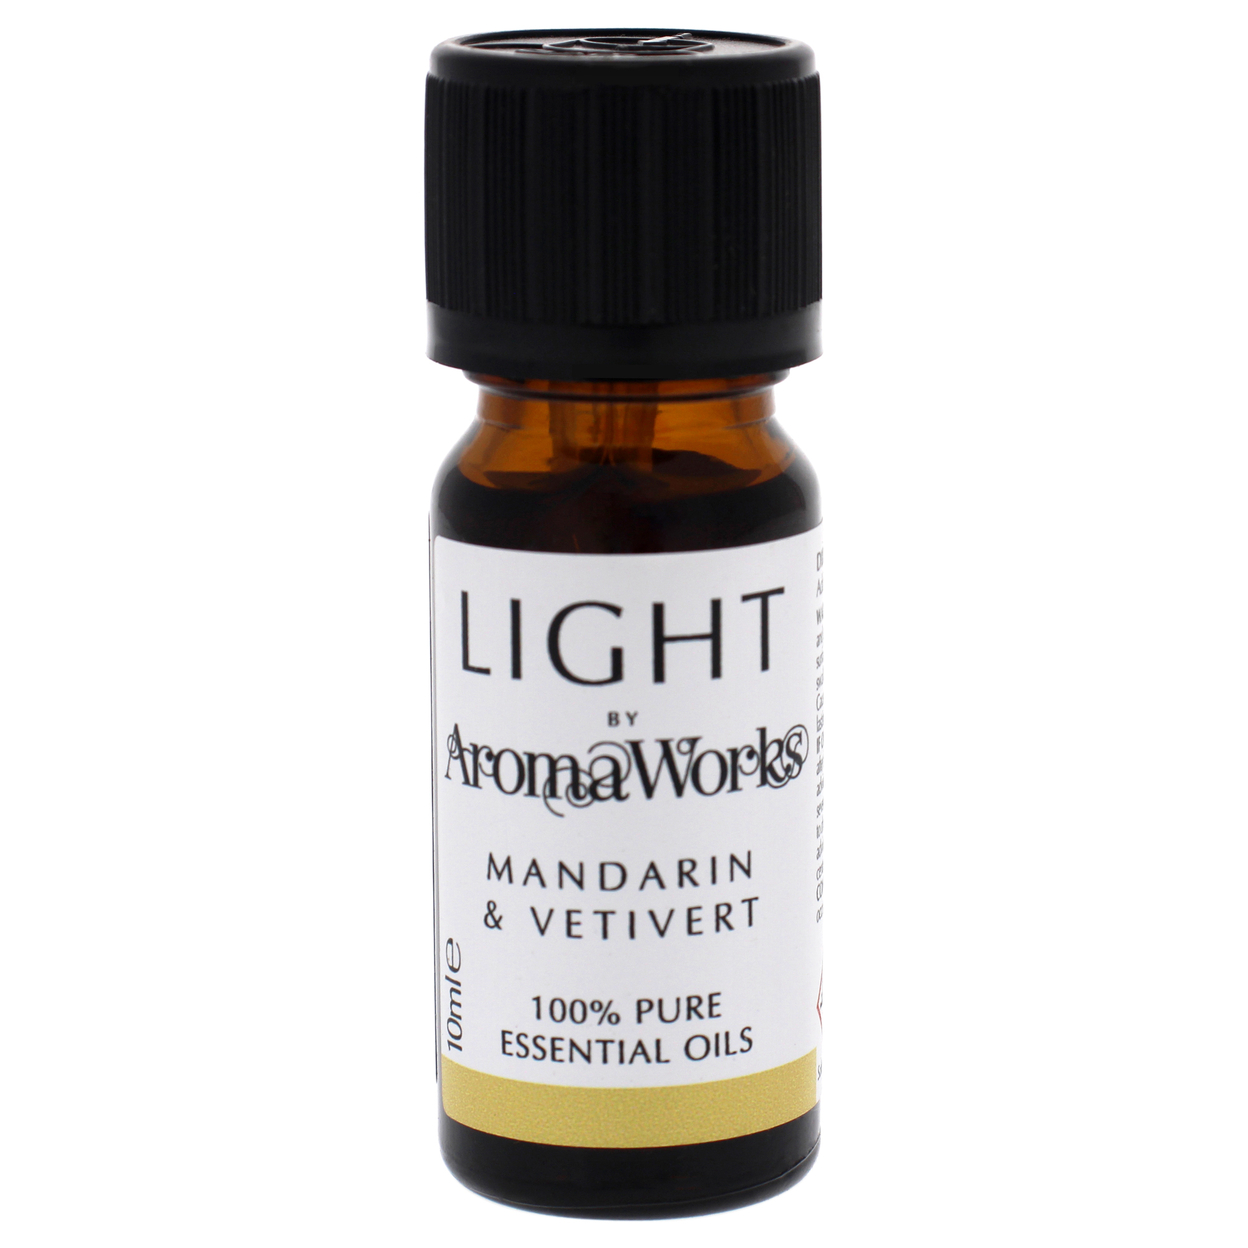 Aromaworks Light Essential Oil - Mandarin And Vetivert 0.33 Oz